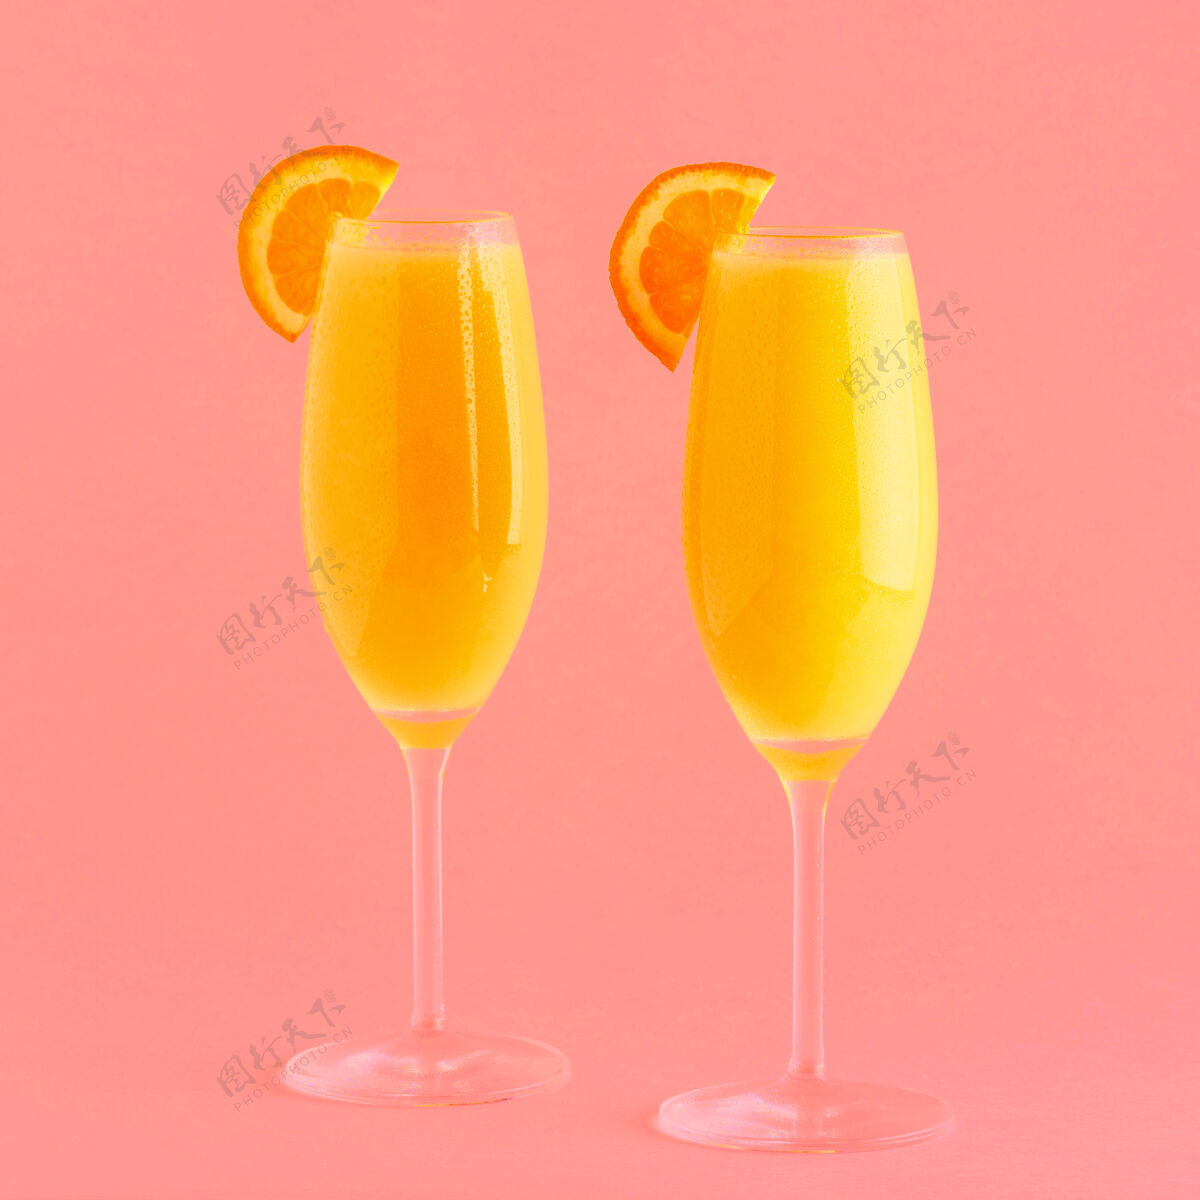 酸橙明亮背景上的黄色鸡尾酒 选择性聚焦新鲜朗姆酒橙色